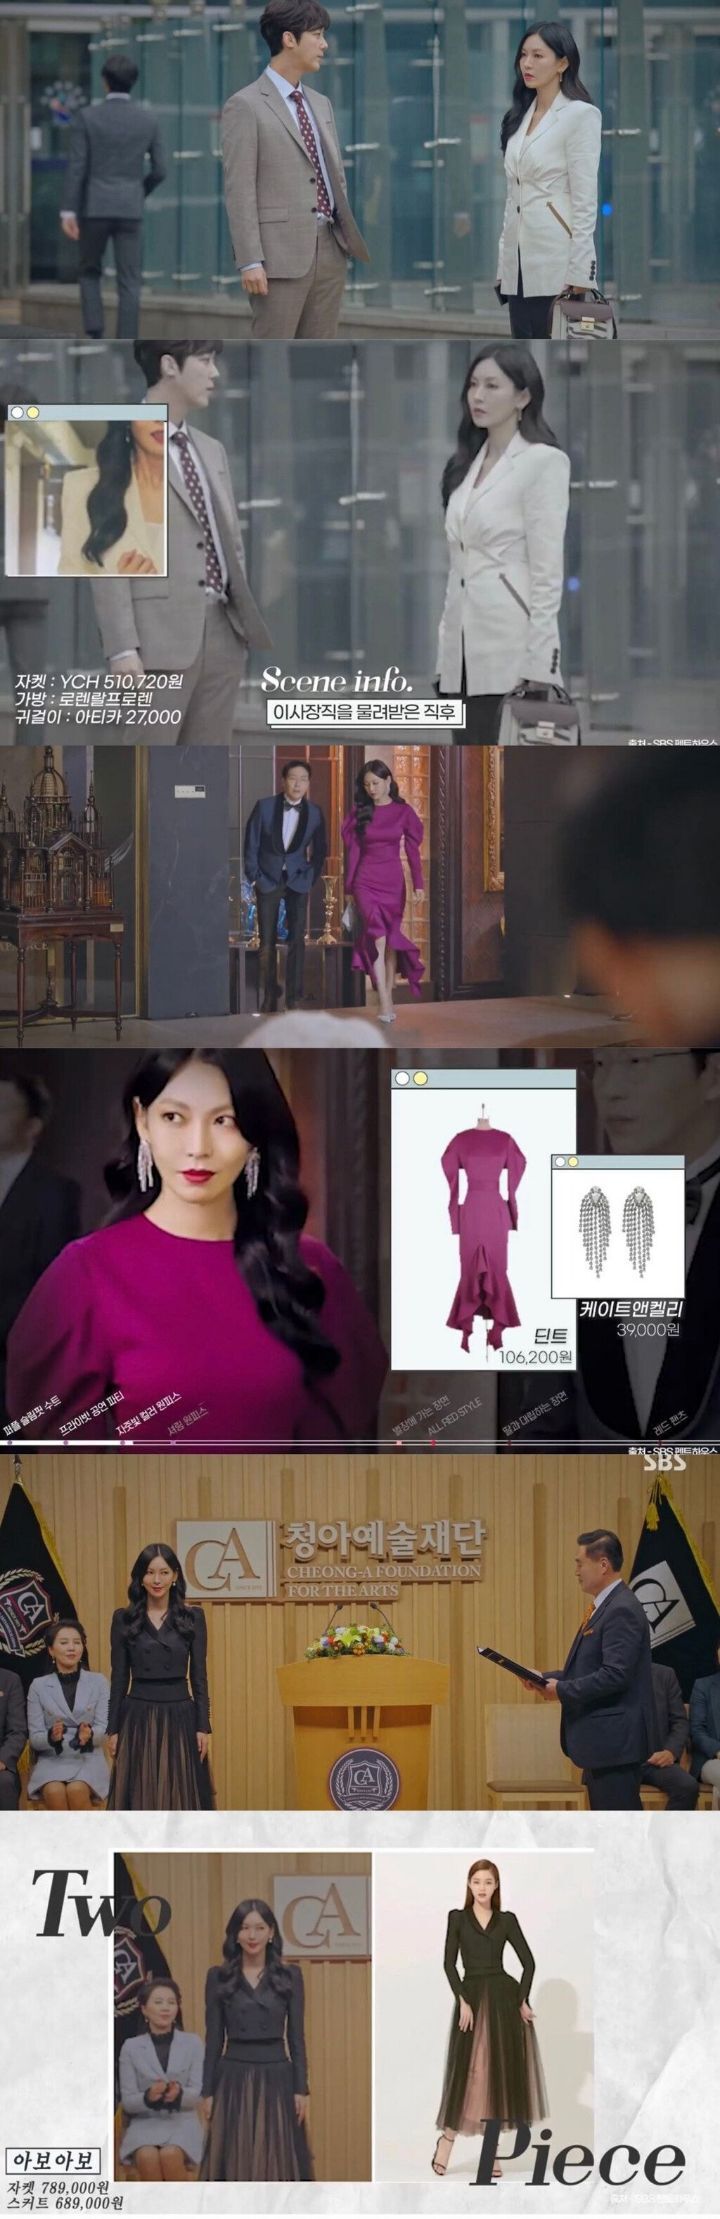 김소연이 펜트하우스에서 입고나온 옷 가격 - 꾸르